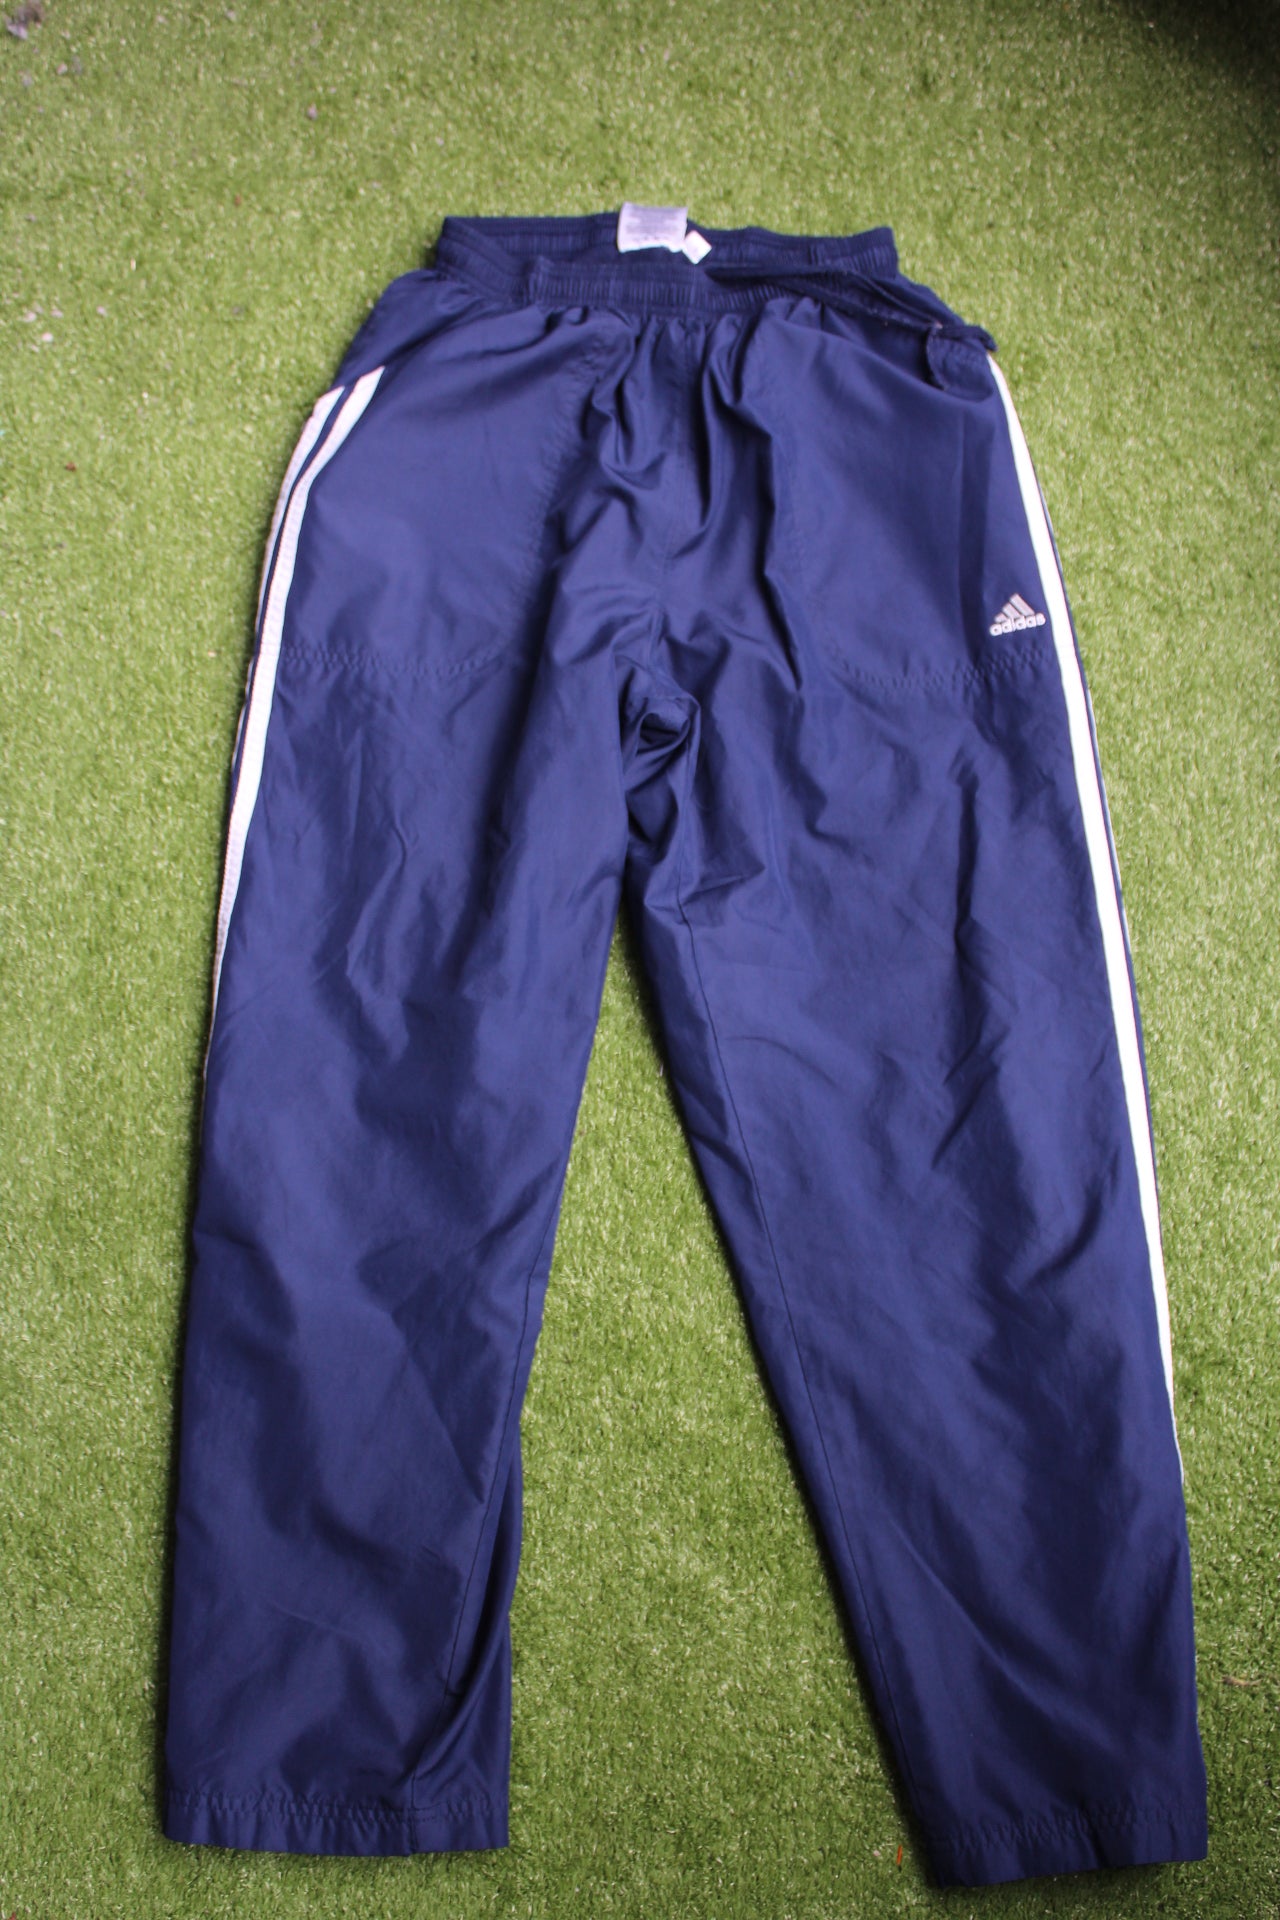 Adidas capri pants (Medium)